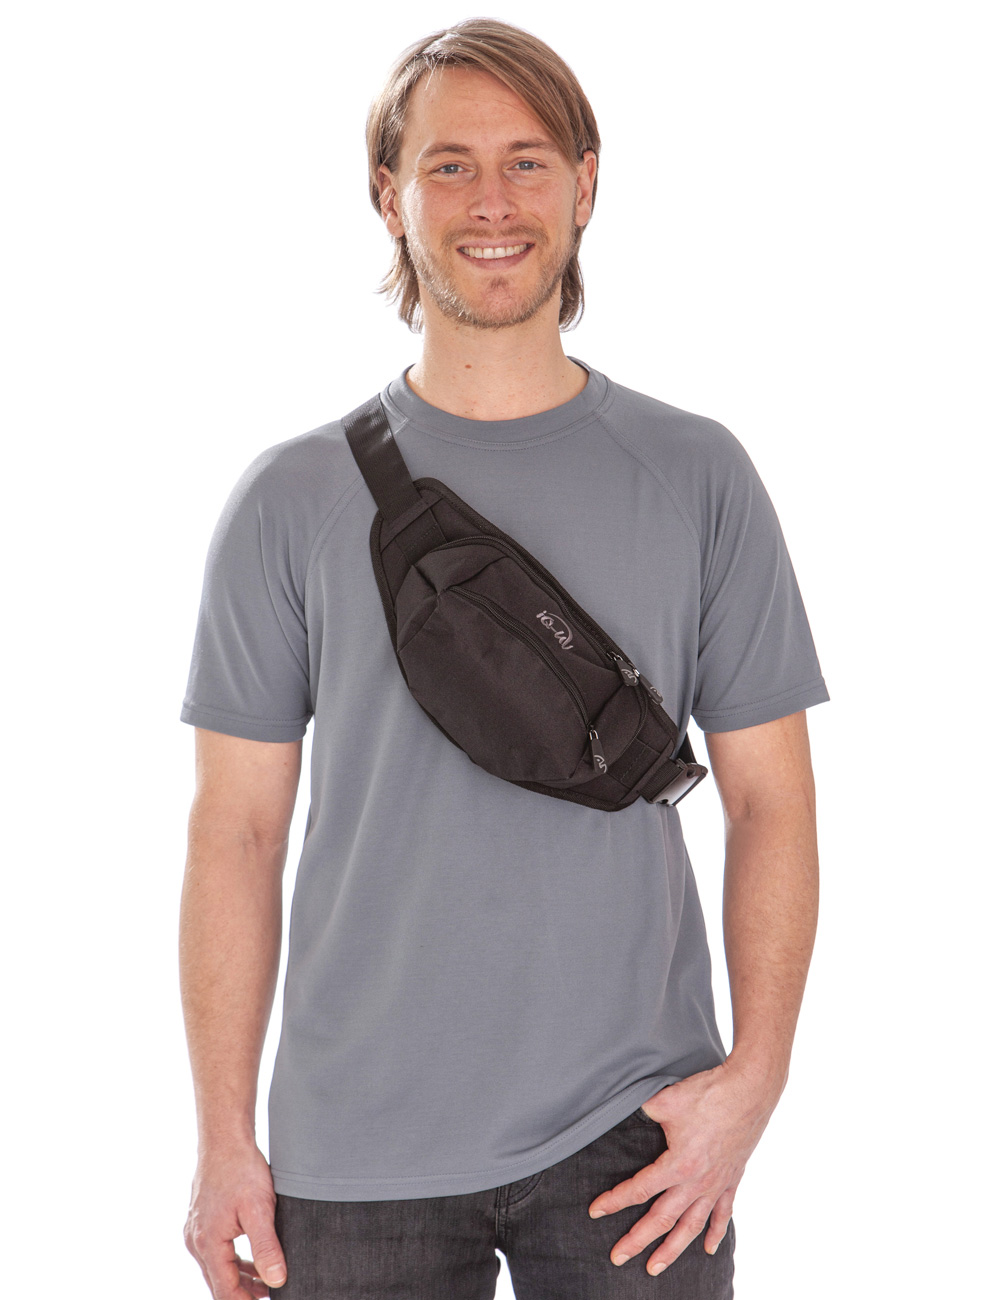 Hüfttasche mit Reißverschluss schwarz als crossbody bag